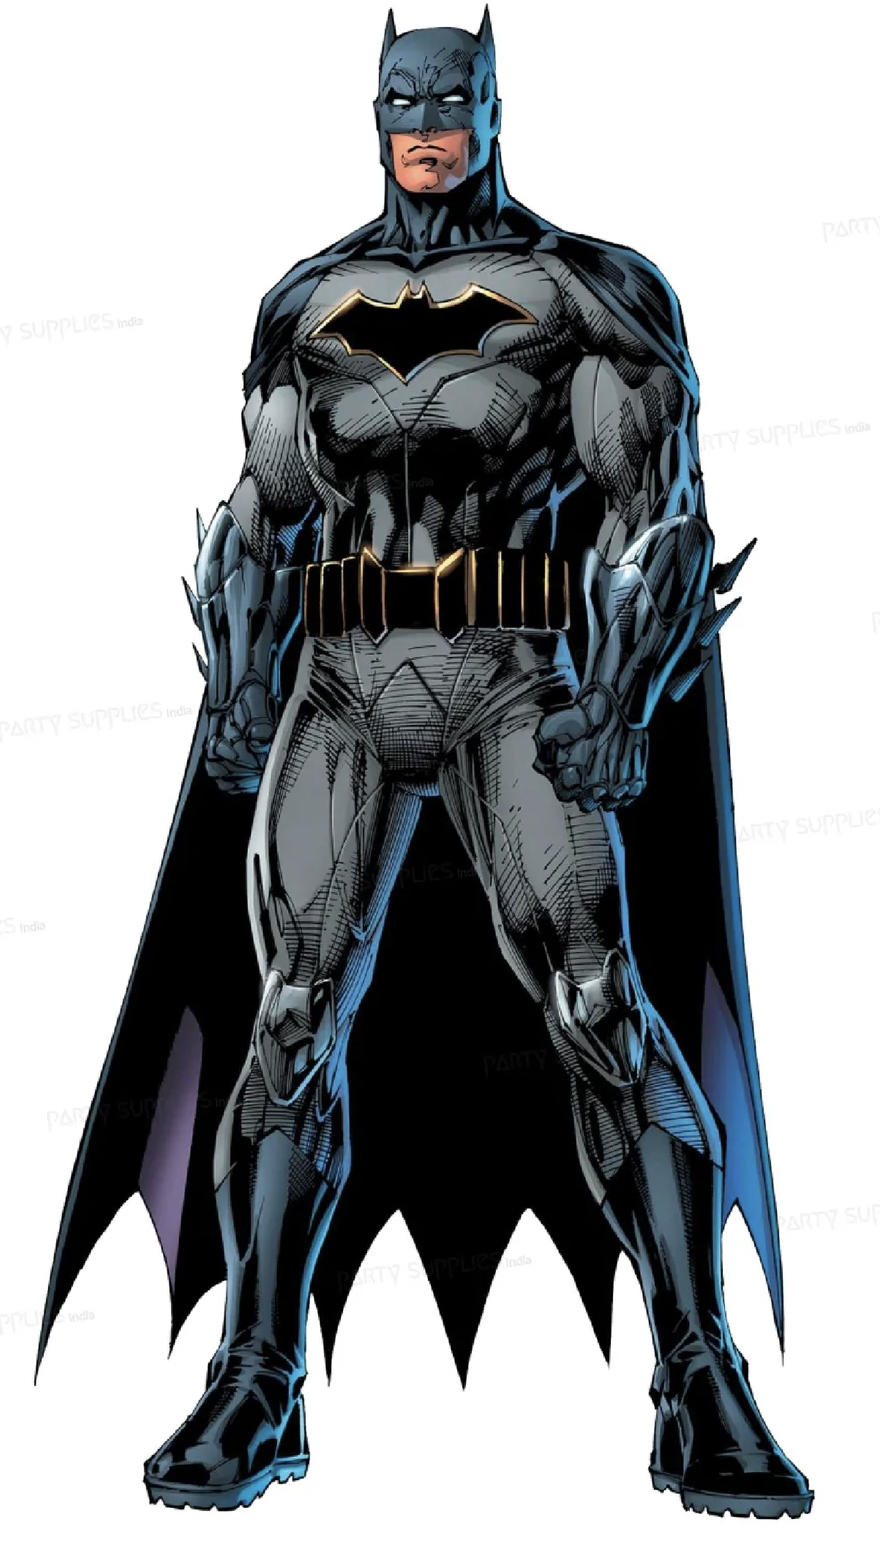 Batman (© DC comics)